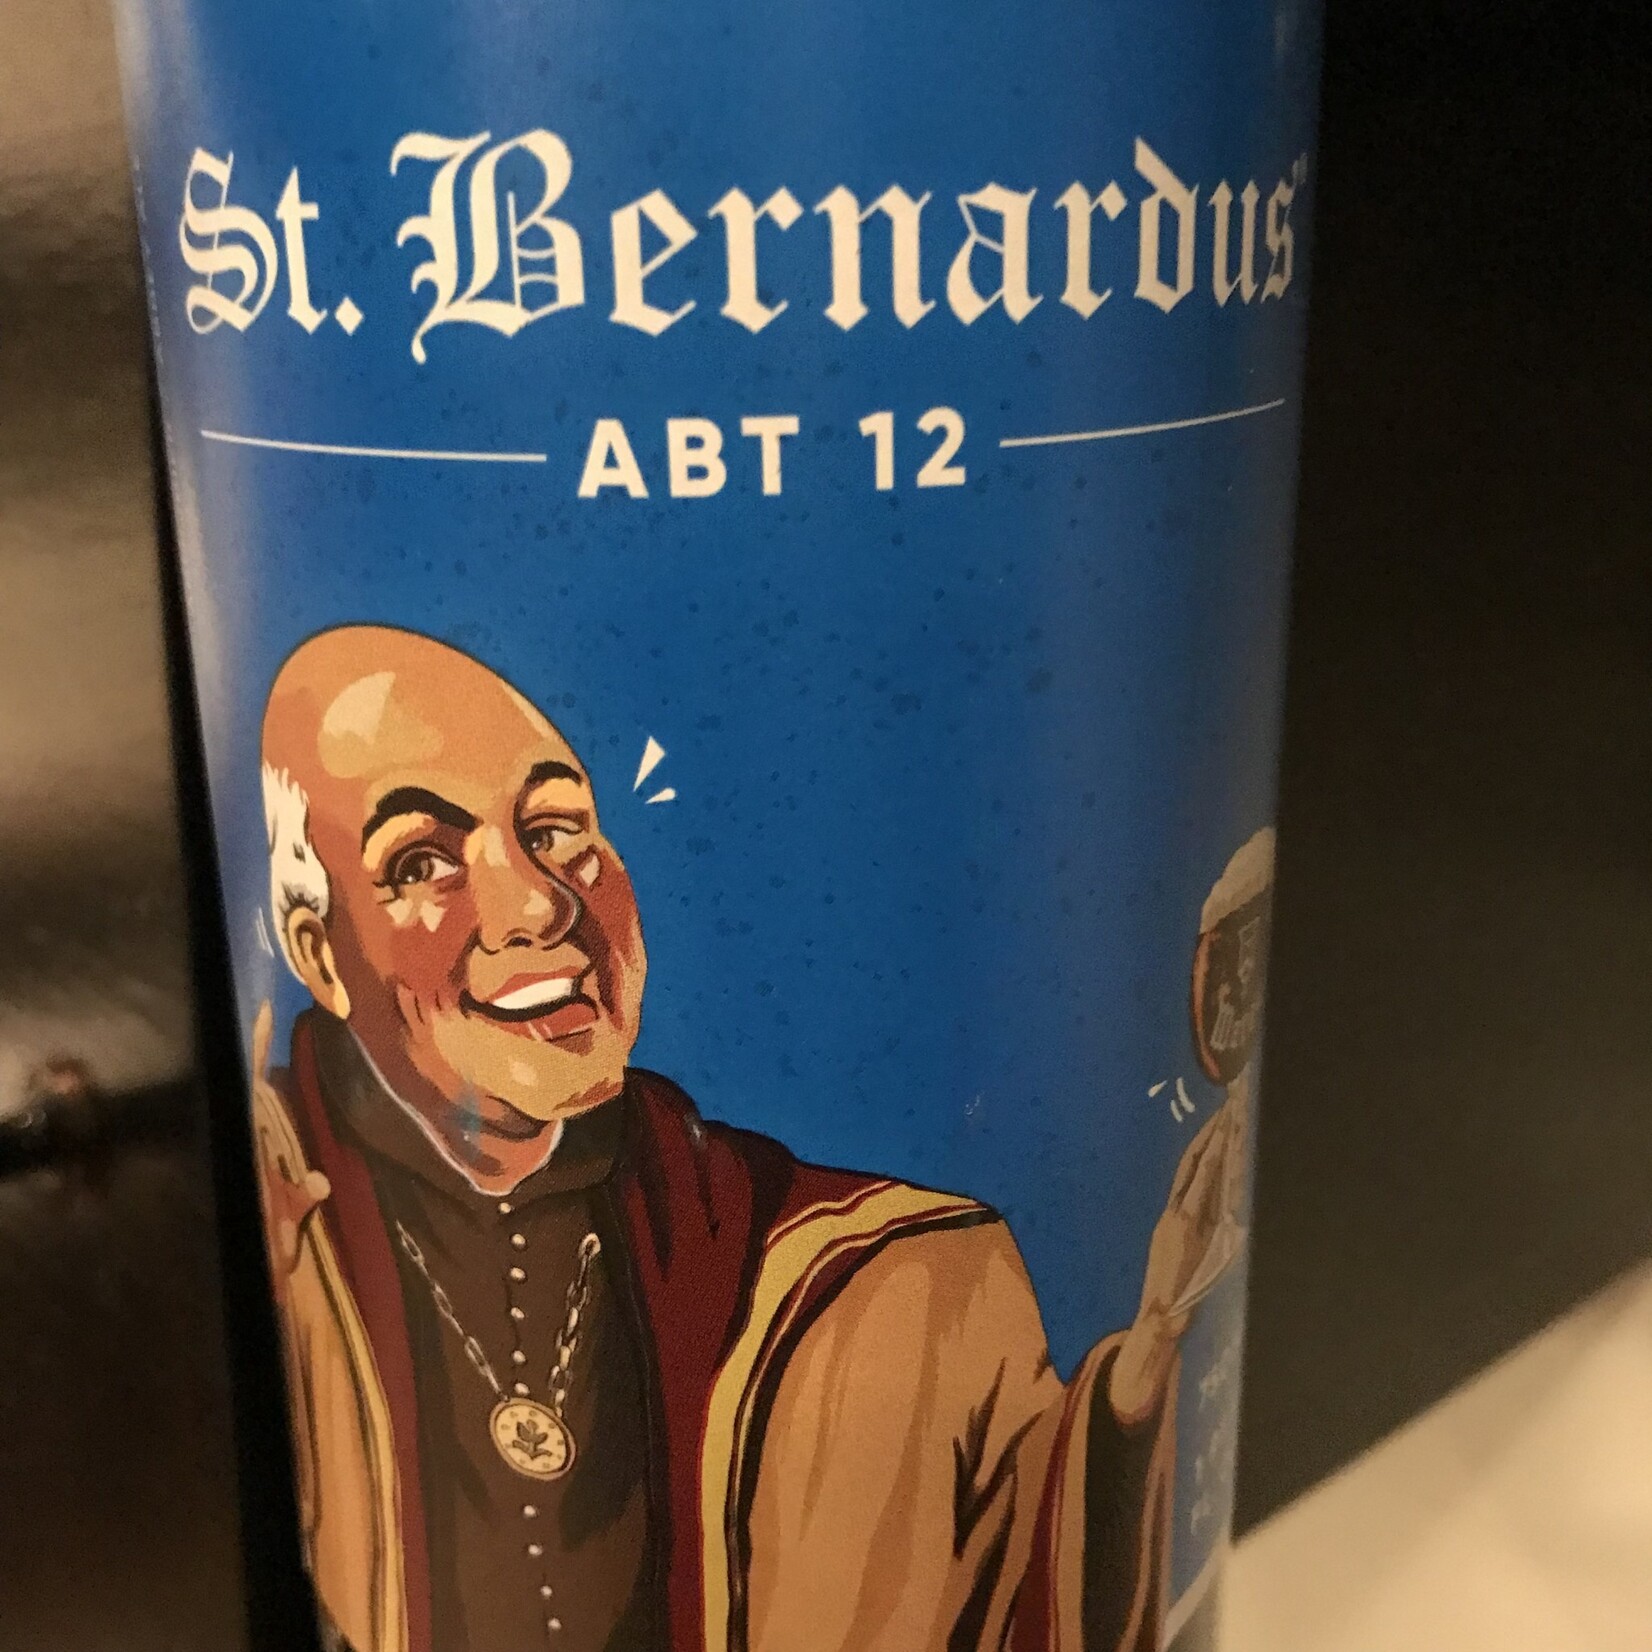 Belgium St. Bernardus Abt 12